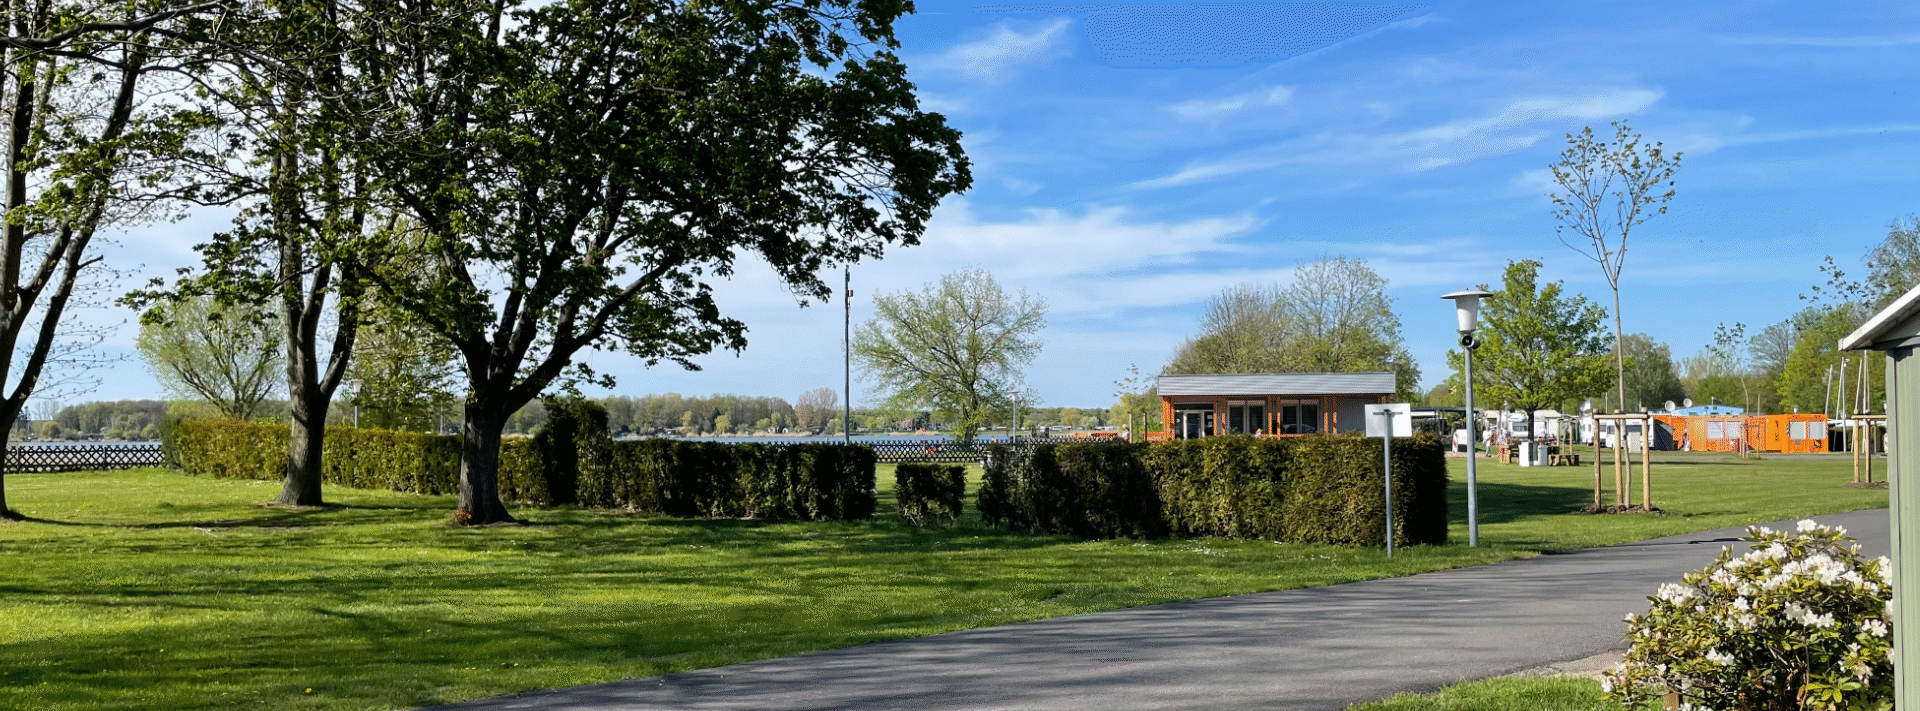 Campingplatzverein Barleber See